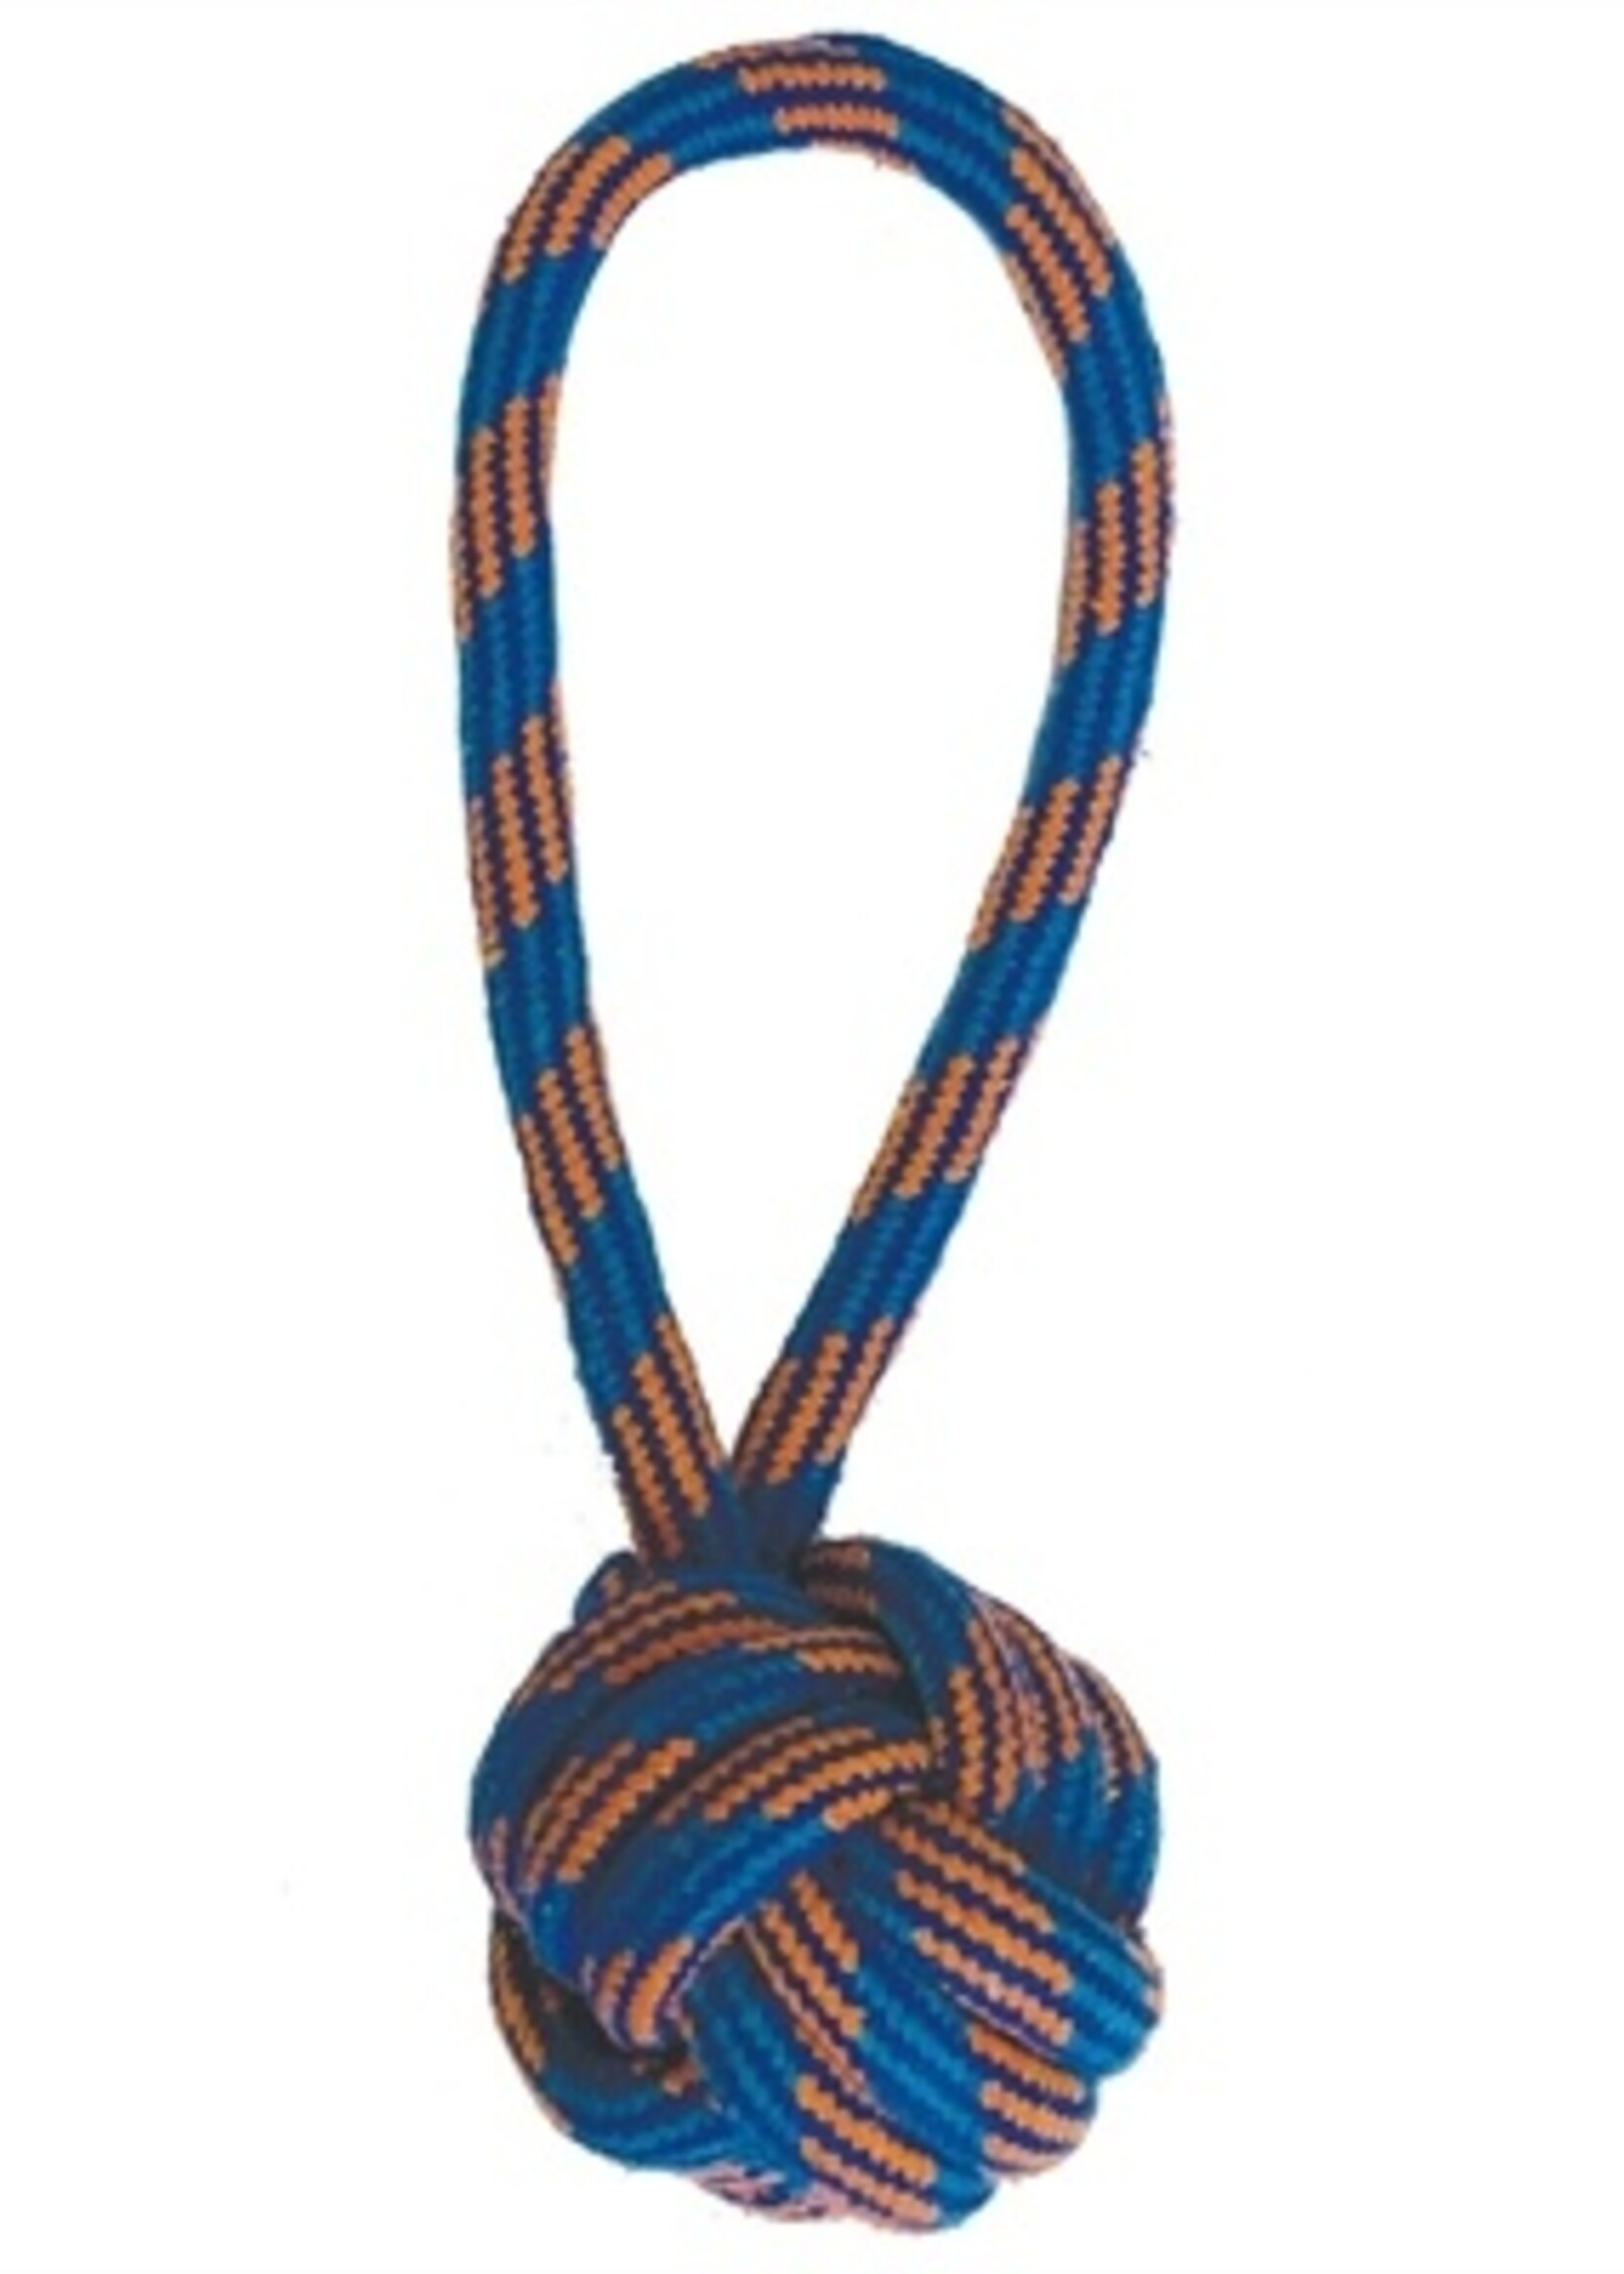 Happy pet Happy pet ropee bal tugger flostouw blauw / oranje